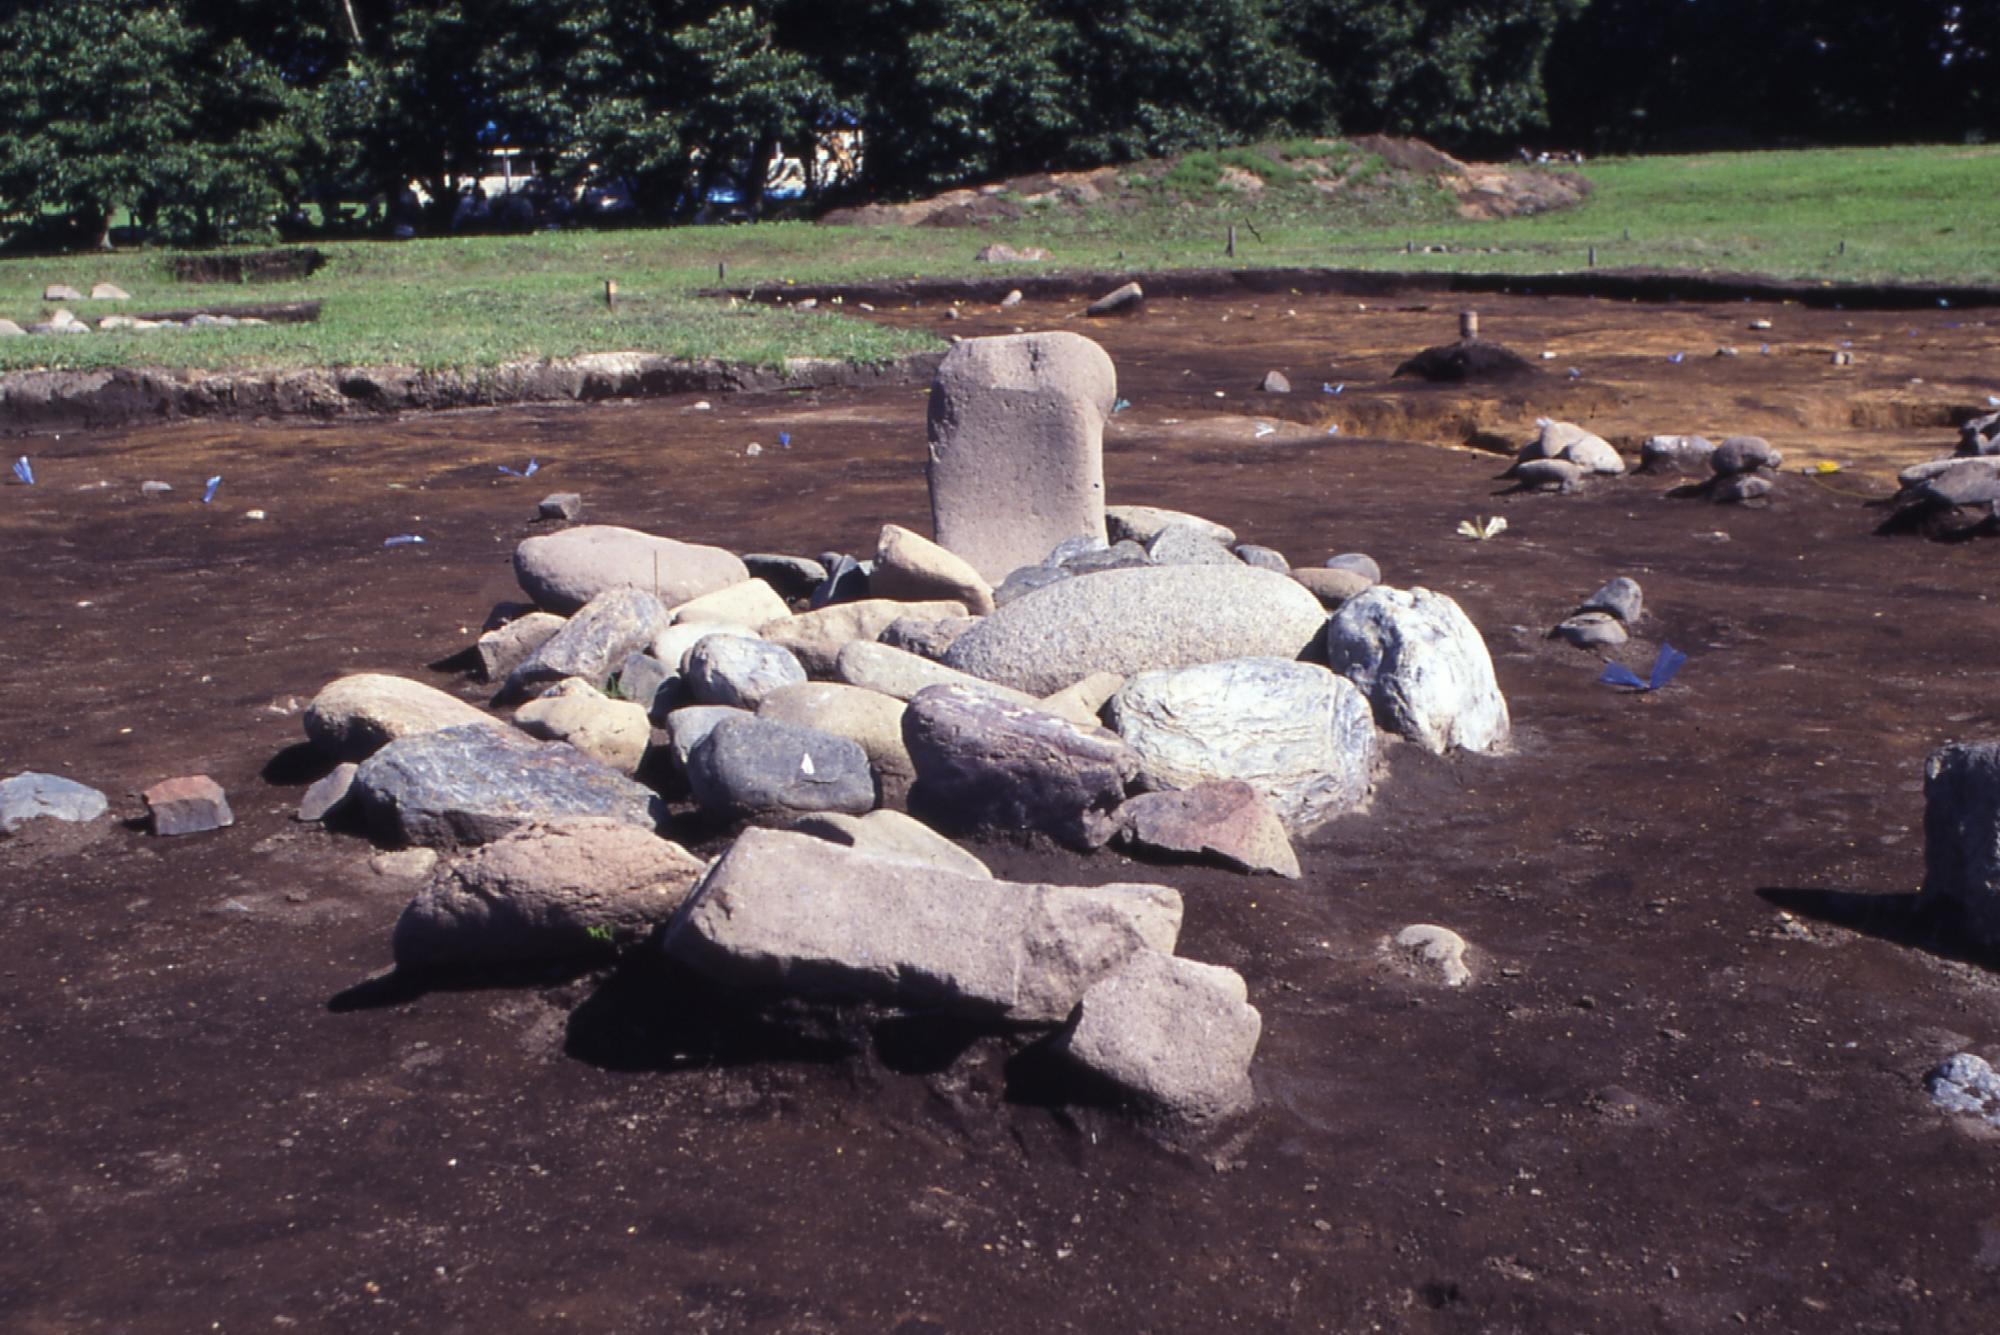 御所野遺跡で見つかった配石遺構の出土状況